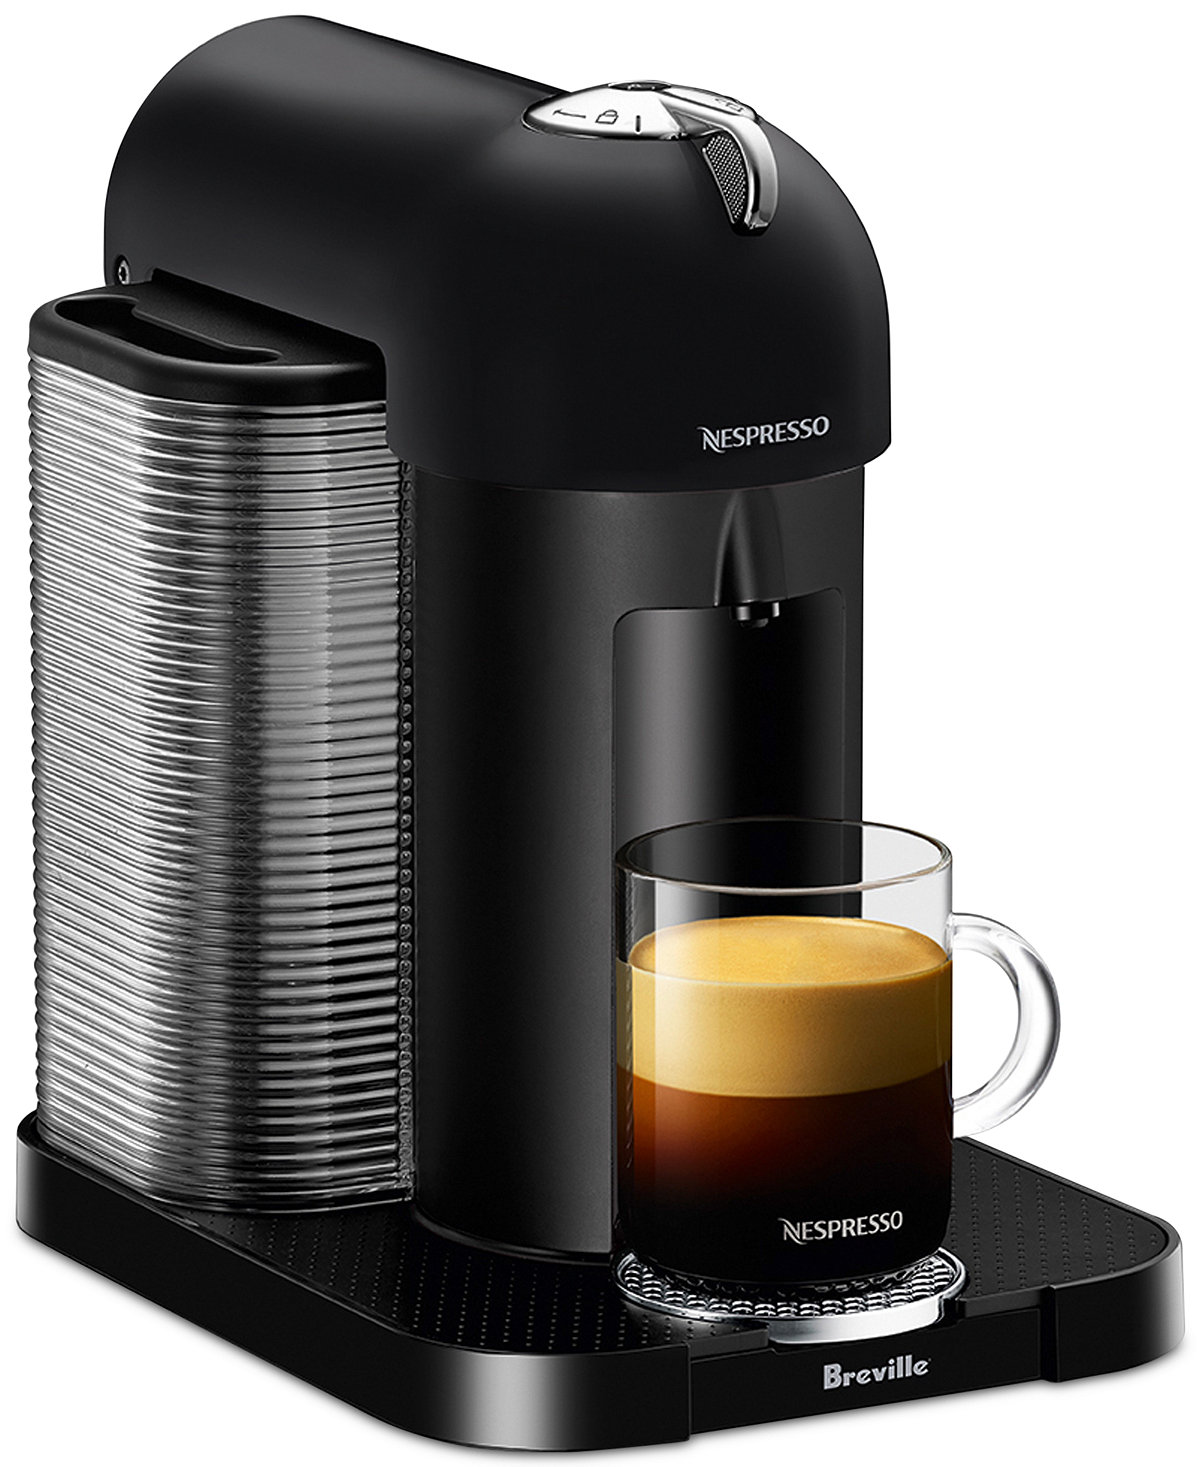 Nespresso Breville VertuoLine Coffee & Espresso Maker